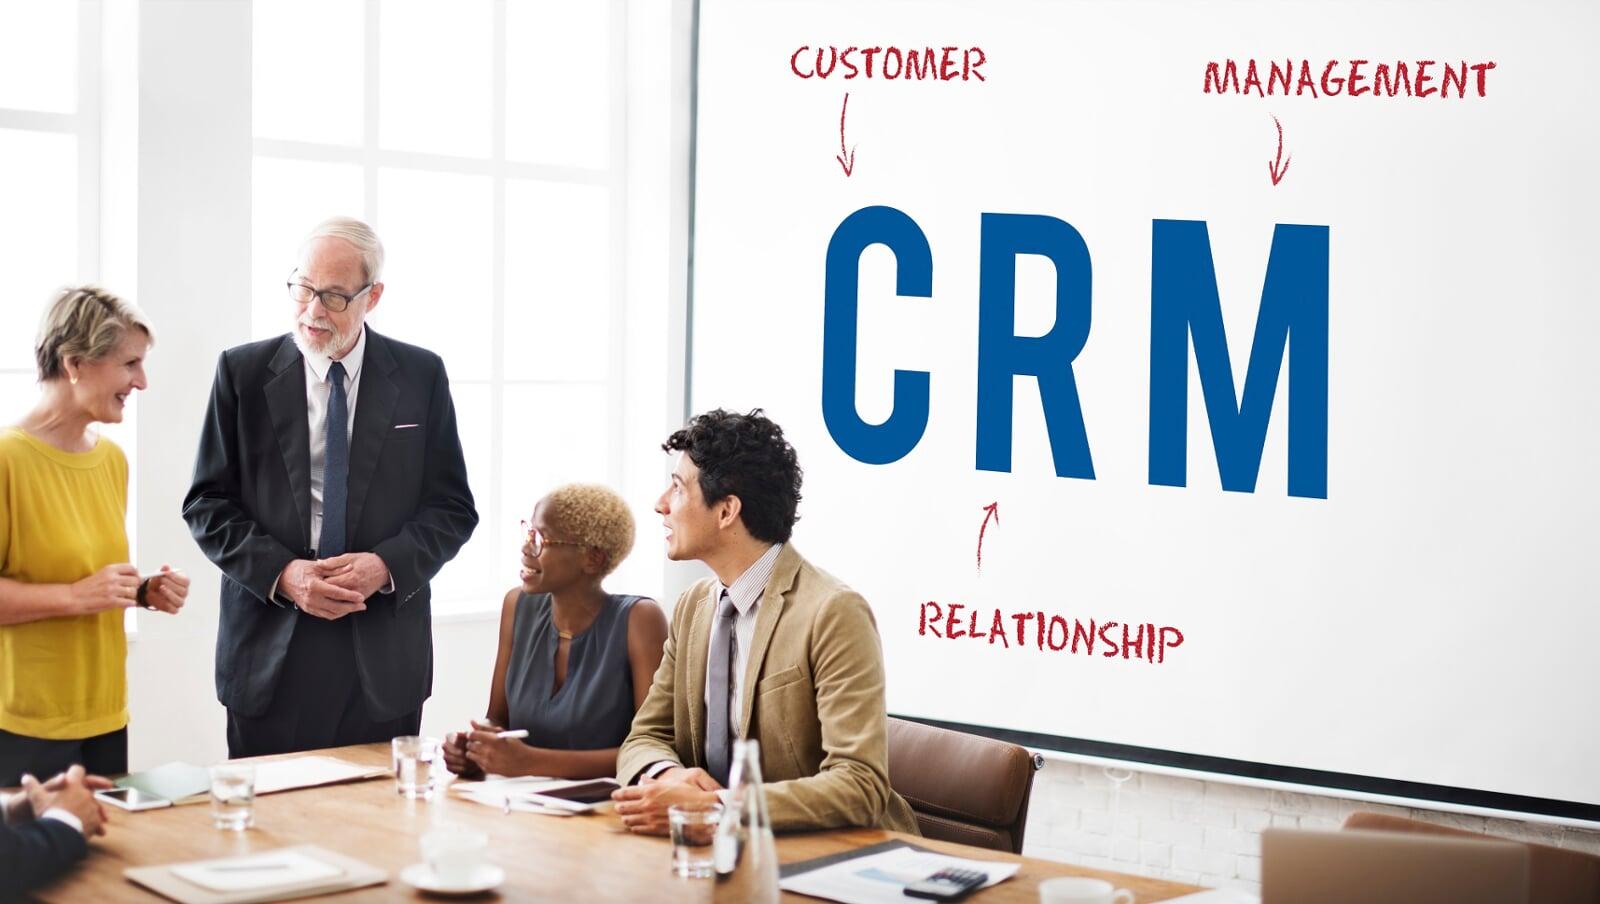 Sistemas de gestión de clientes (CRM), premisa actual para proveedores de servicio como freight forwarders